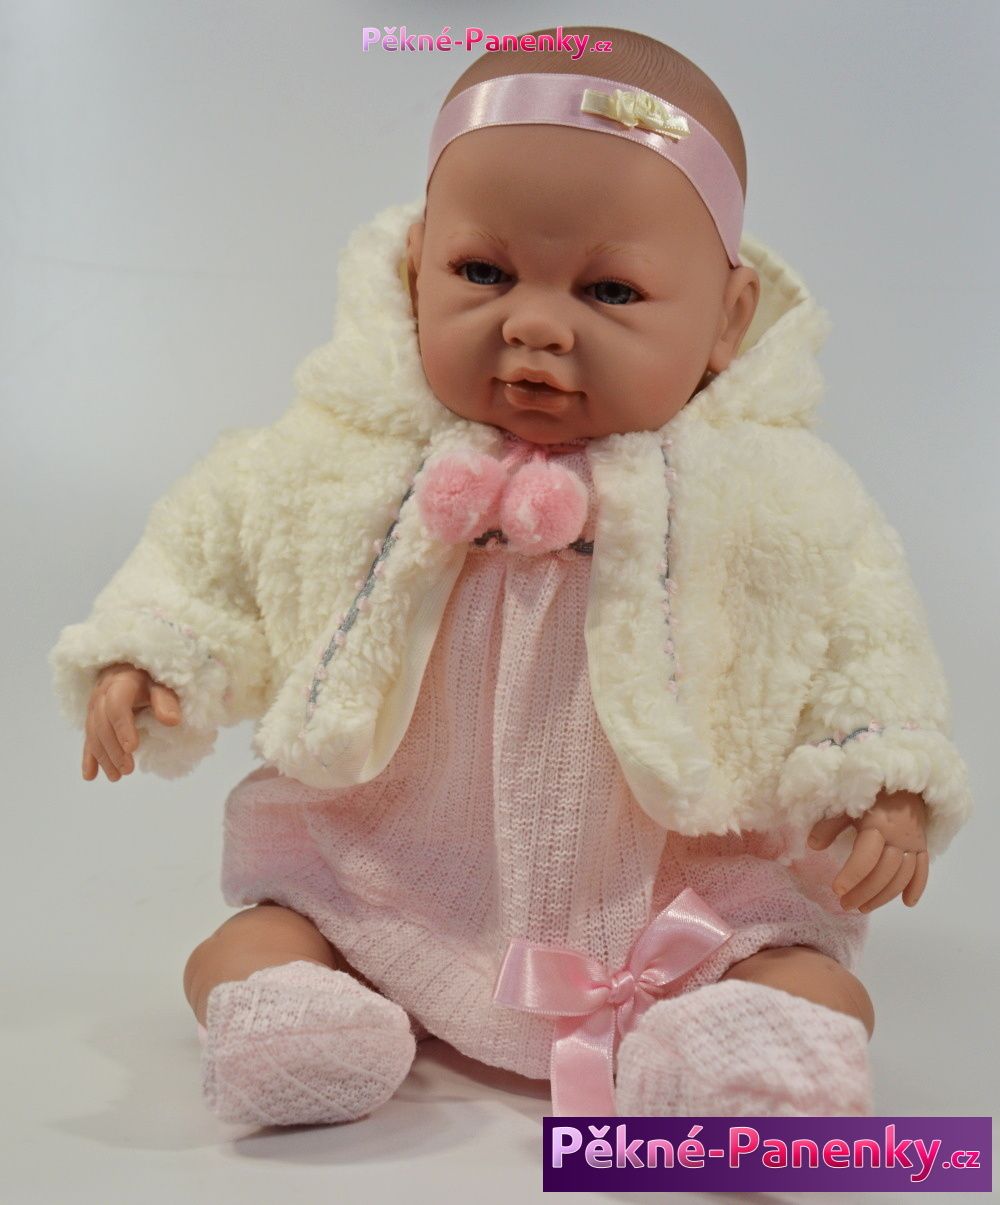 originalní španělské panenky pro děti velká realistická mluvící panenka miminko 50cm, španělské panenky jako živé Berbesa mluvící panenky ze Španělska pro děti